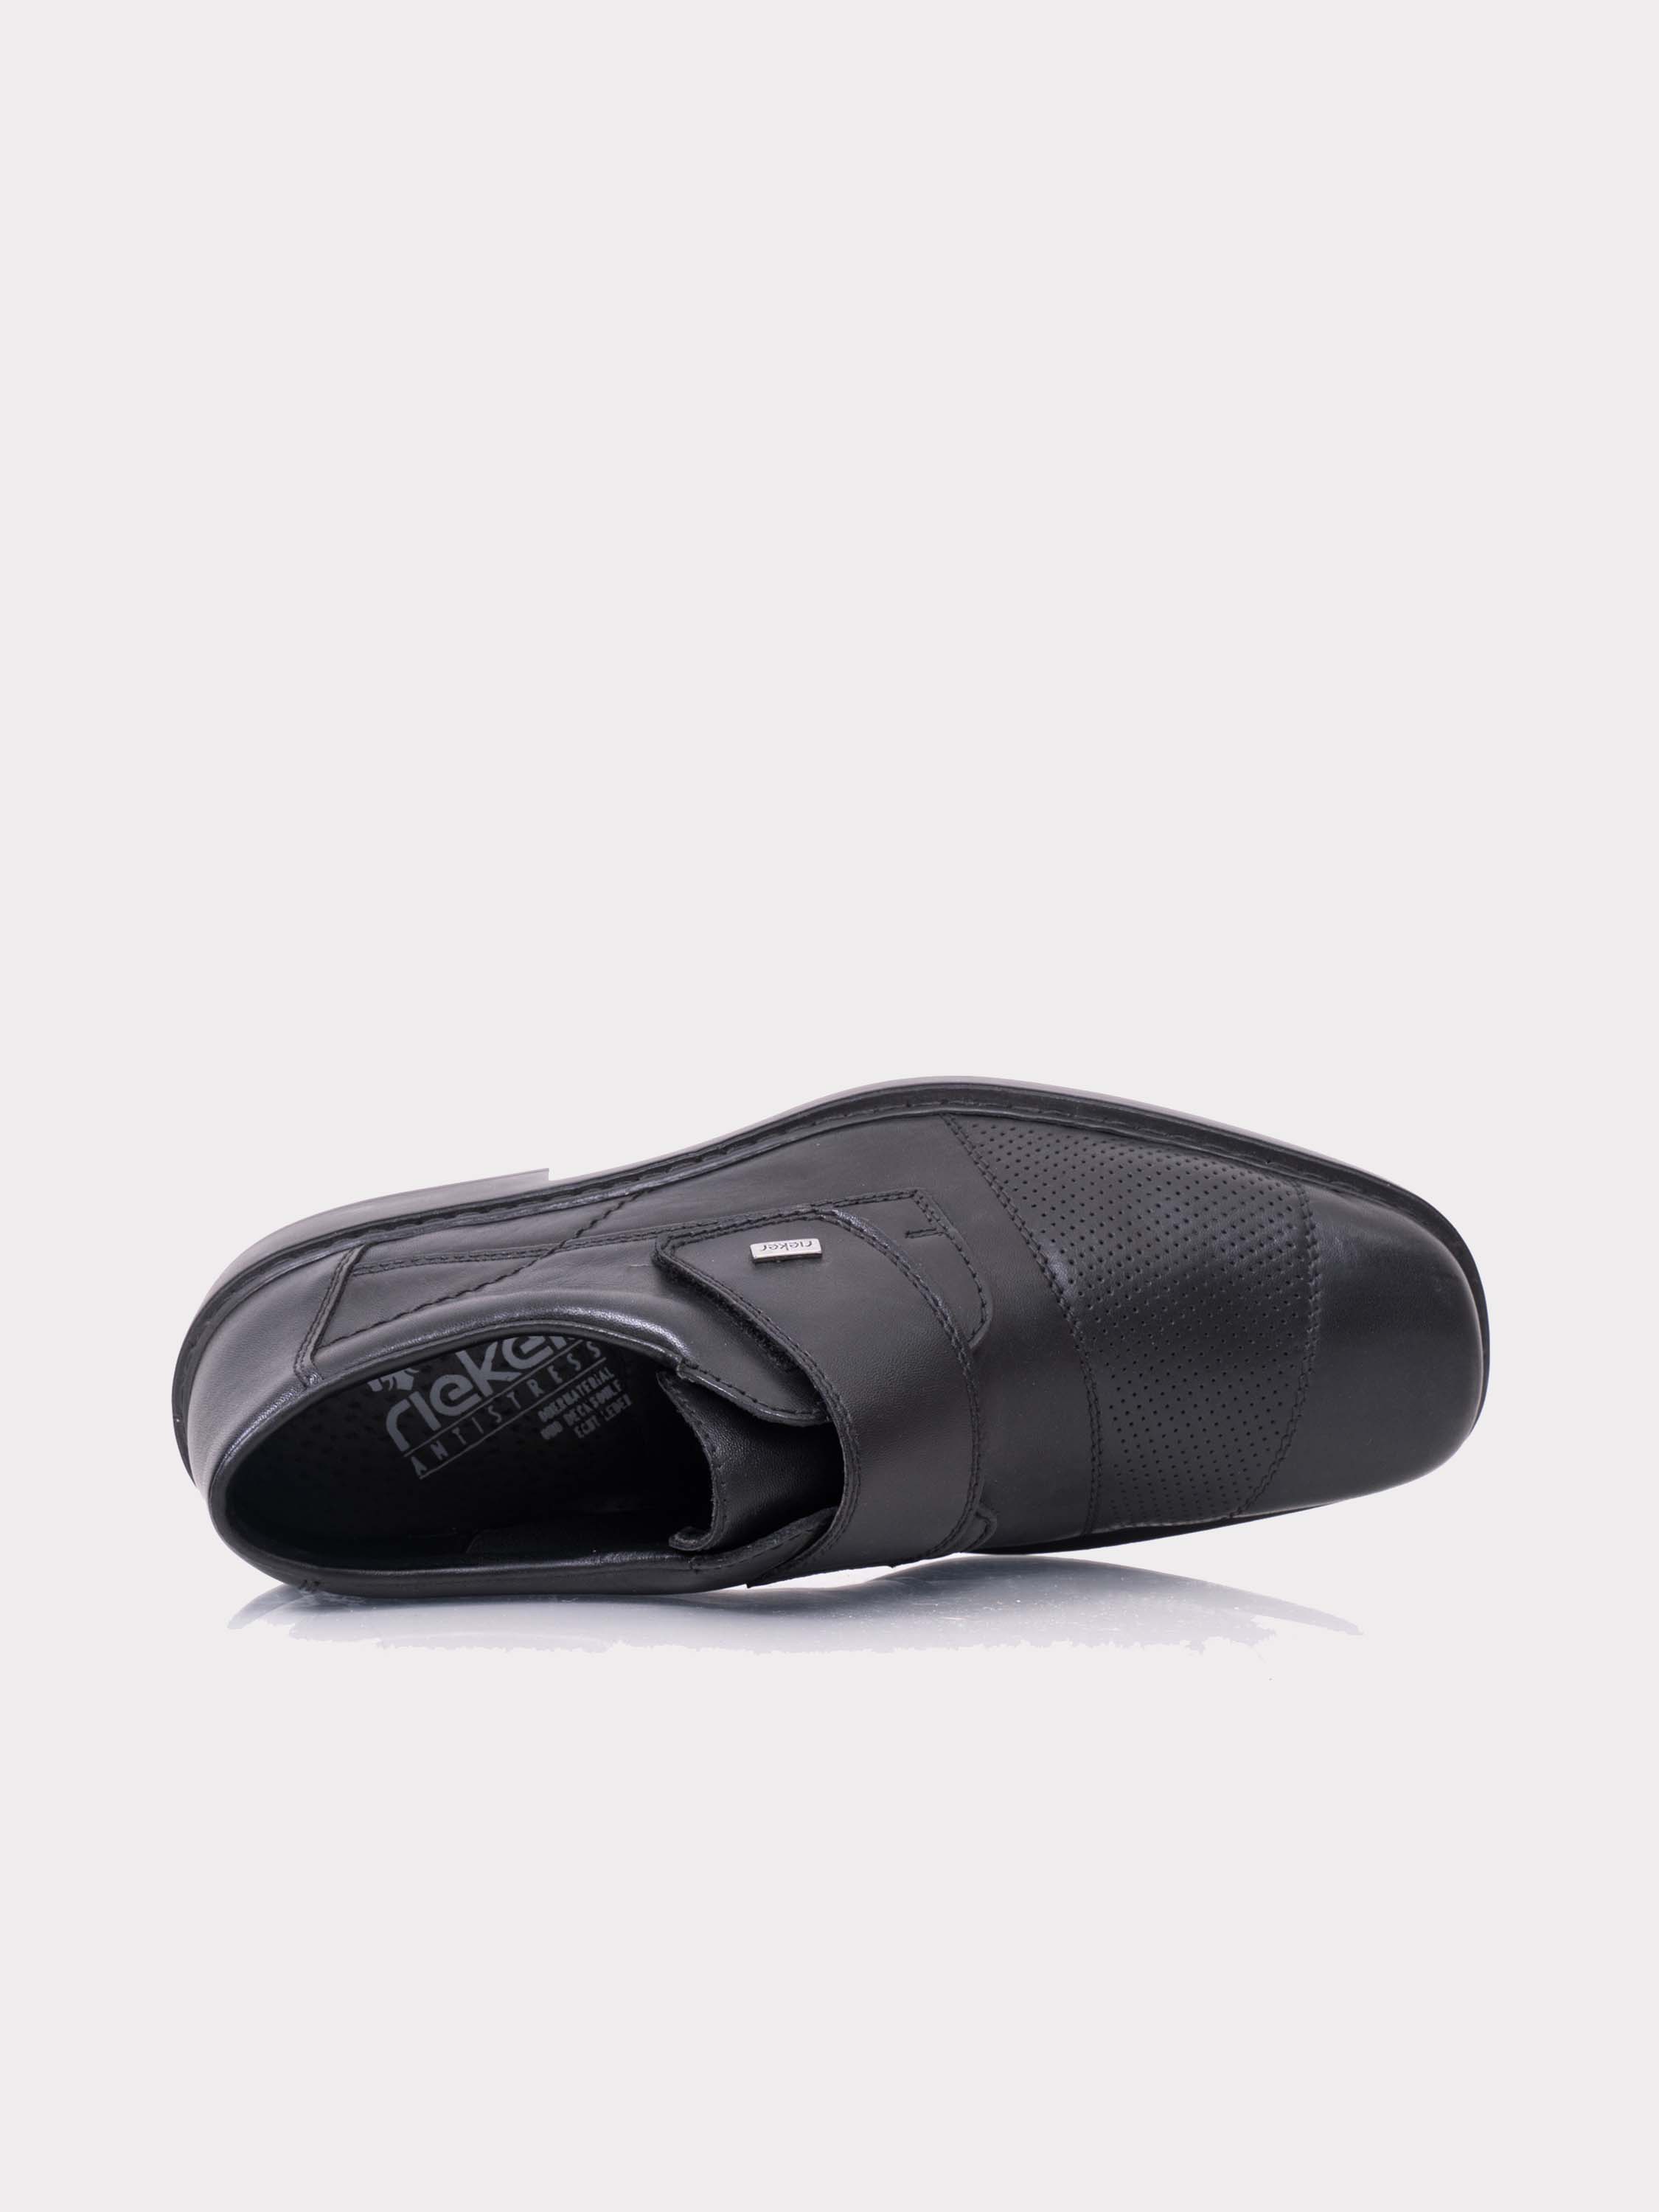 Rieker B0857 Men's Hook & Loop Formal Shoes #color_Black